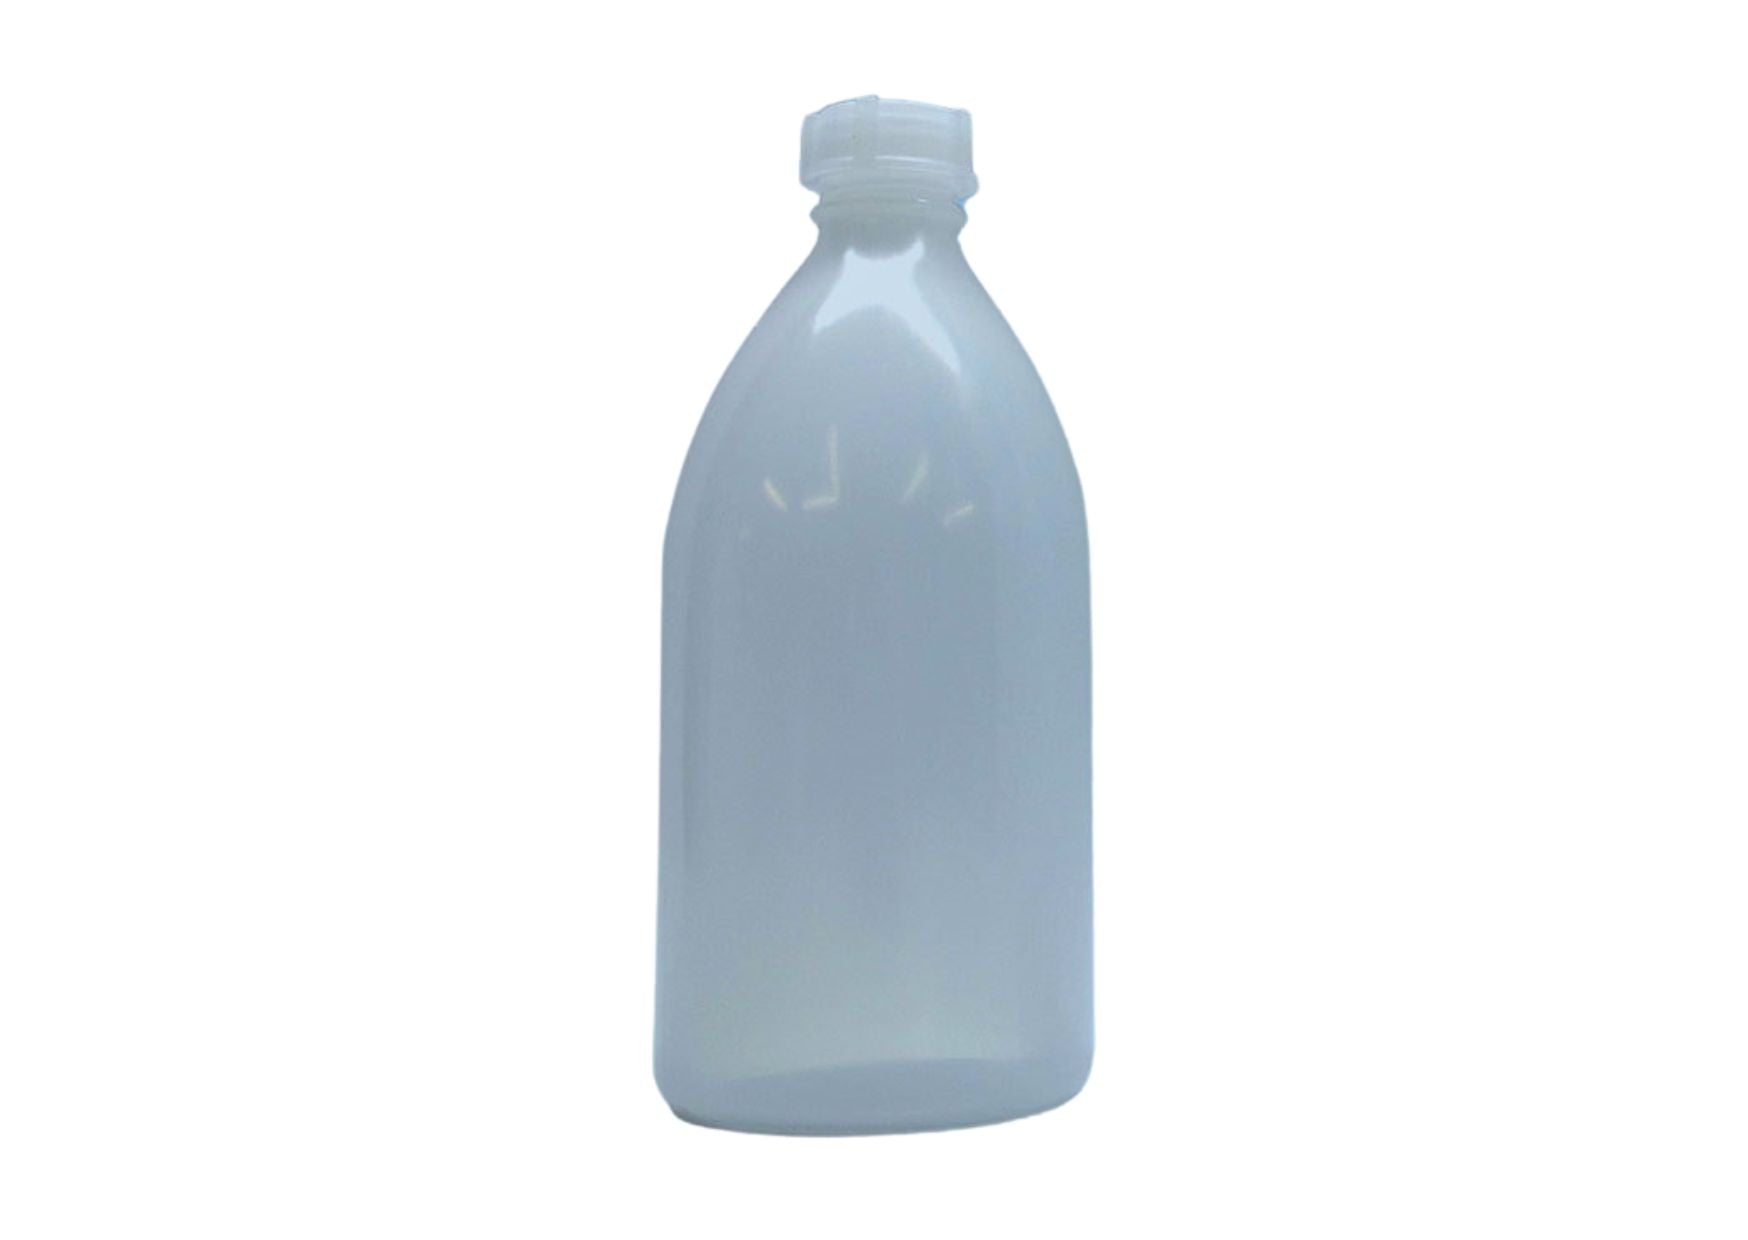 Spritz-Leerflasche mit Spritzaufsatz, 500 ml-Flasche